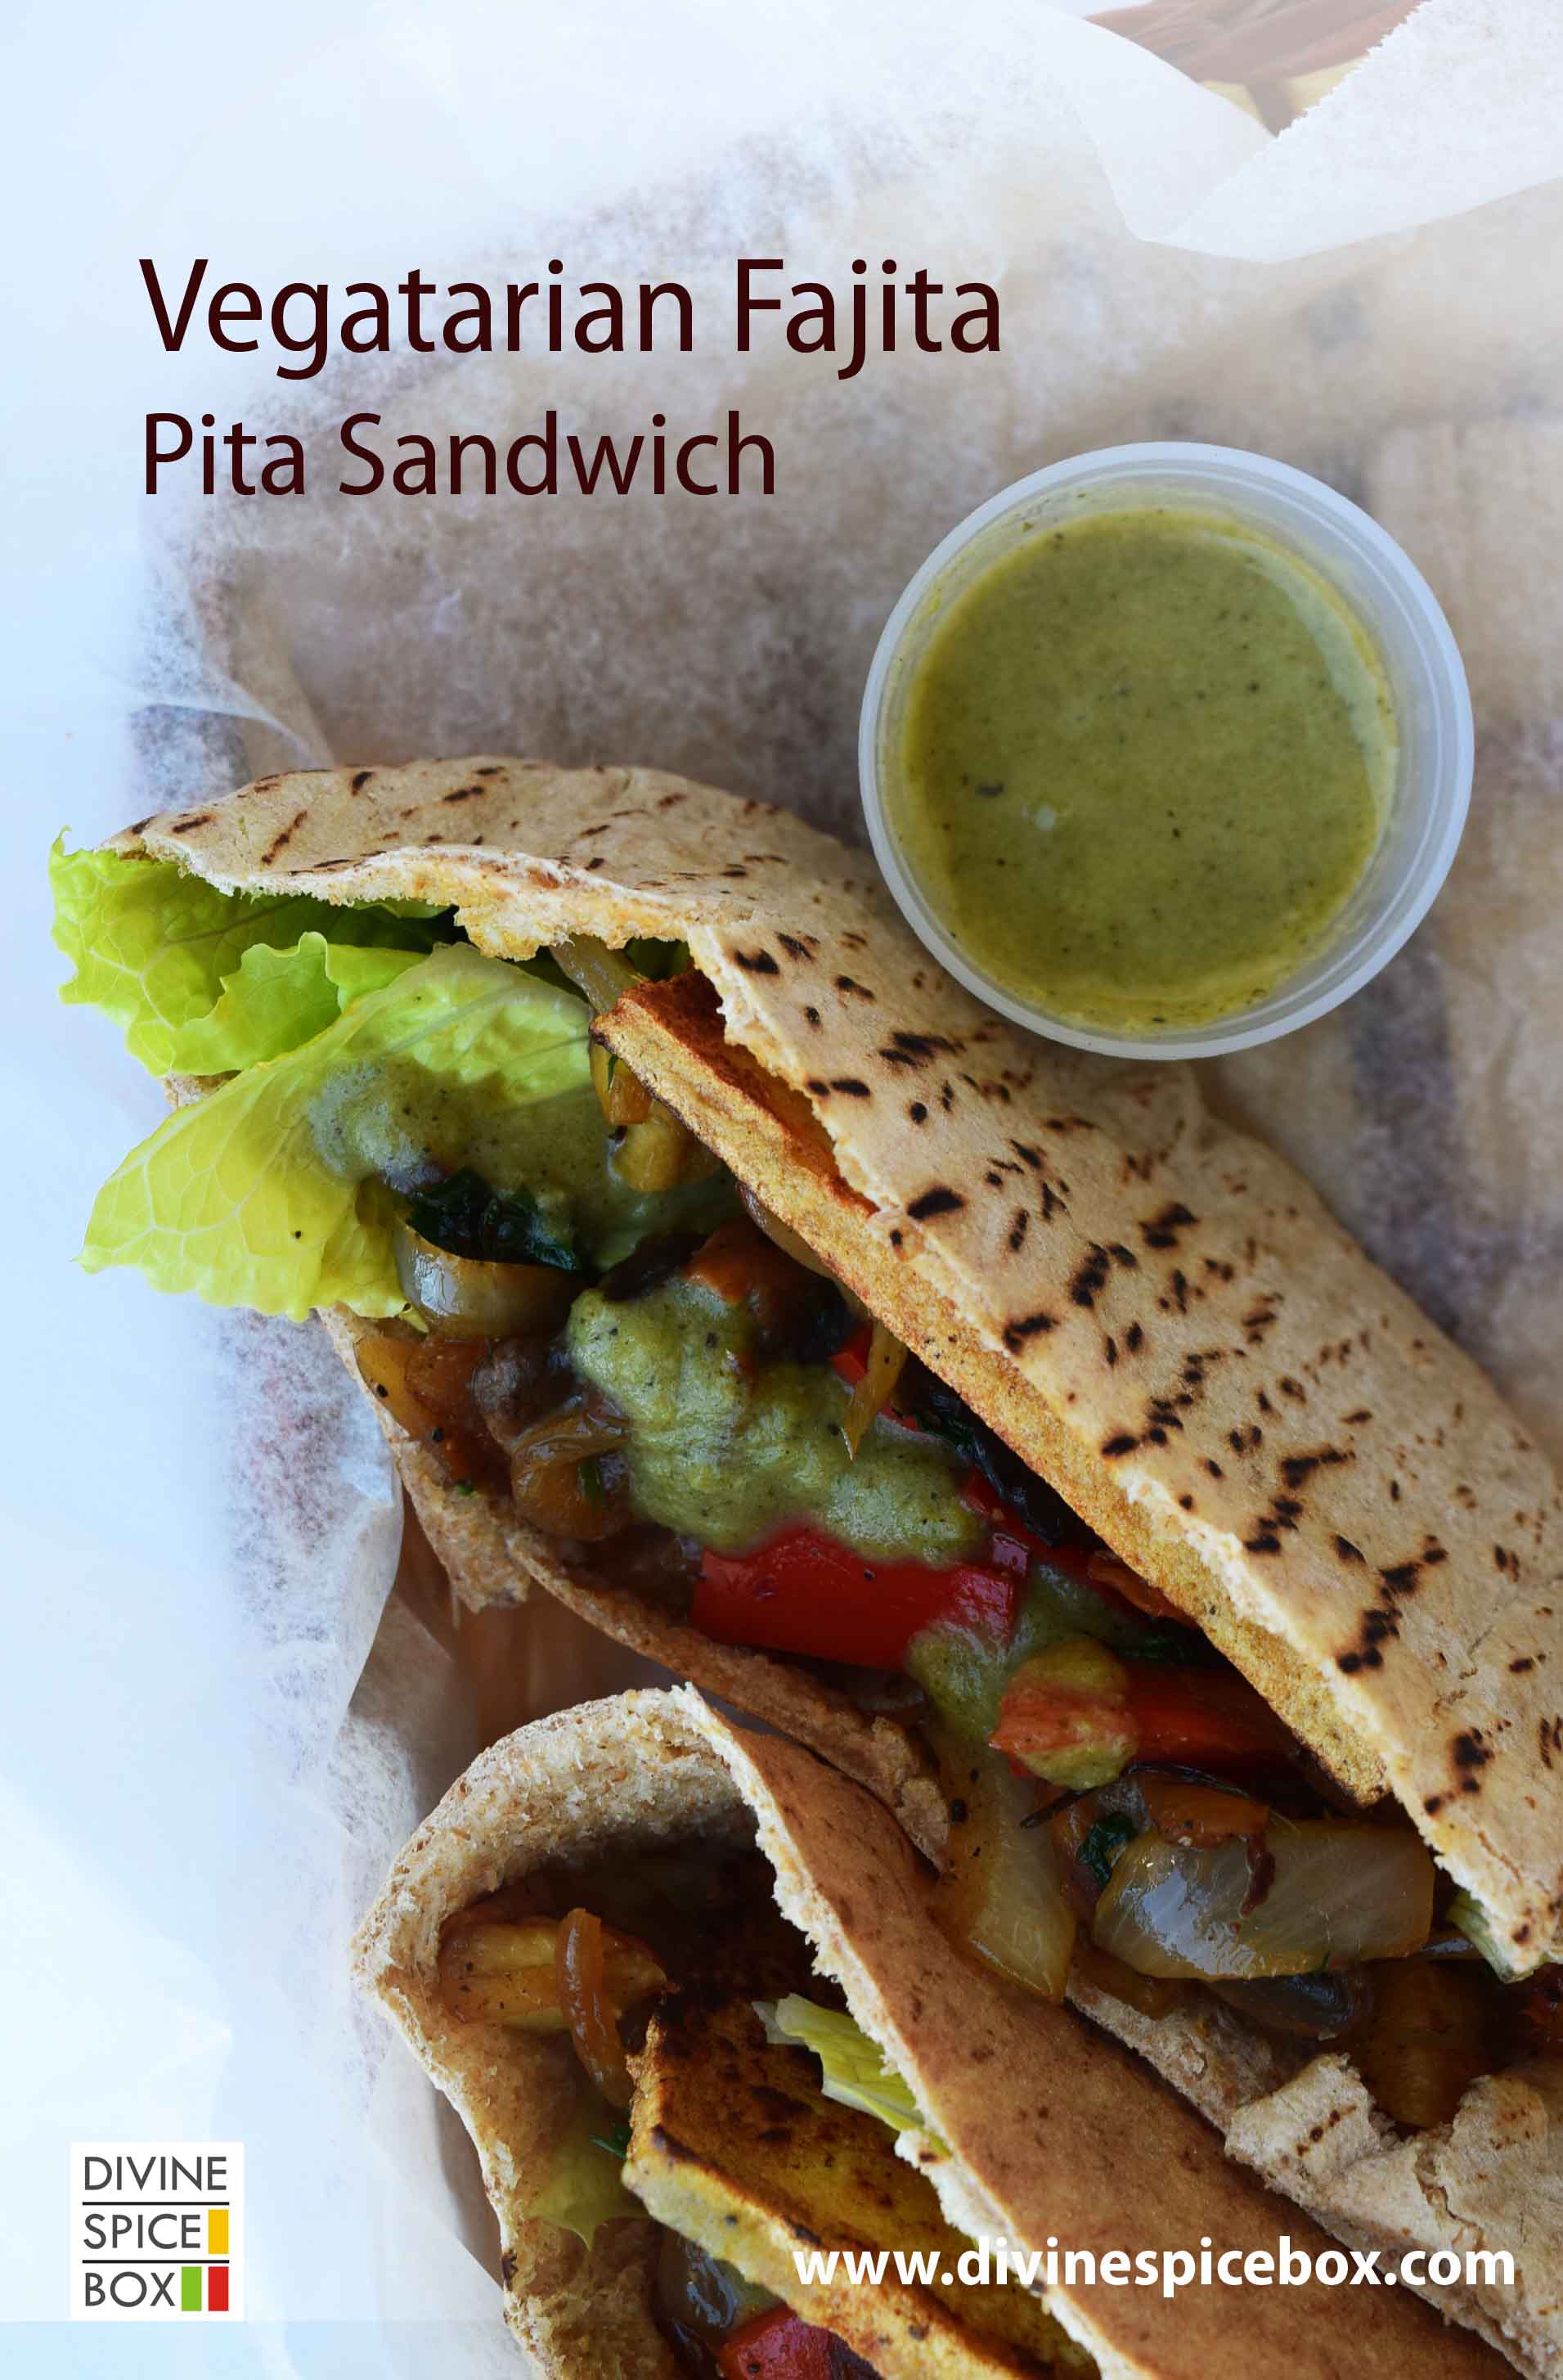 Vegetarian Fajita Pita Sandwich